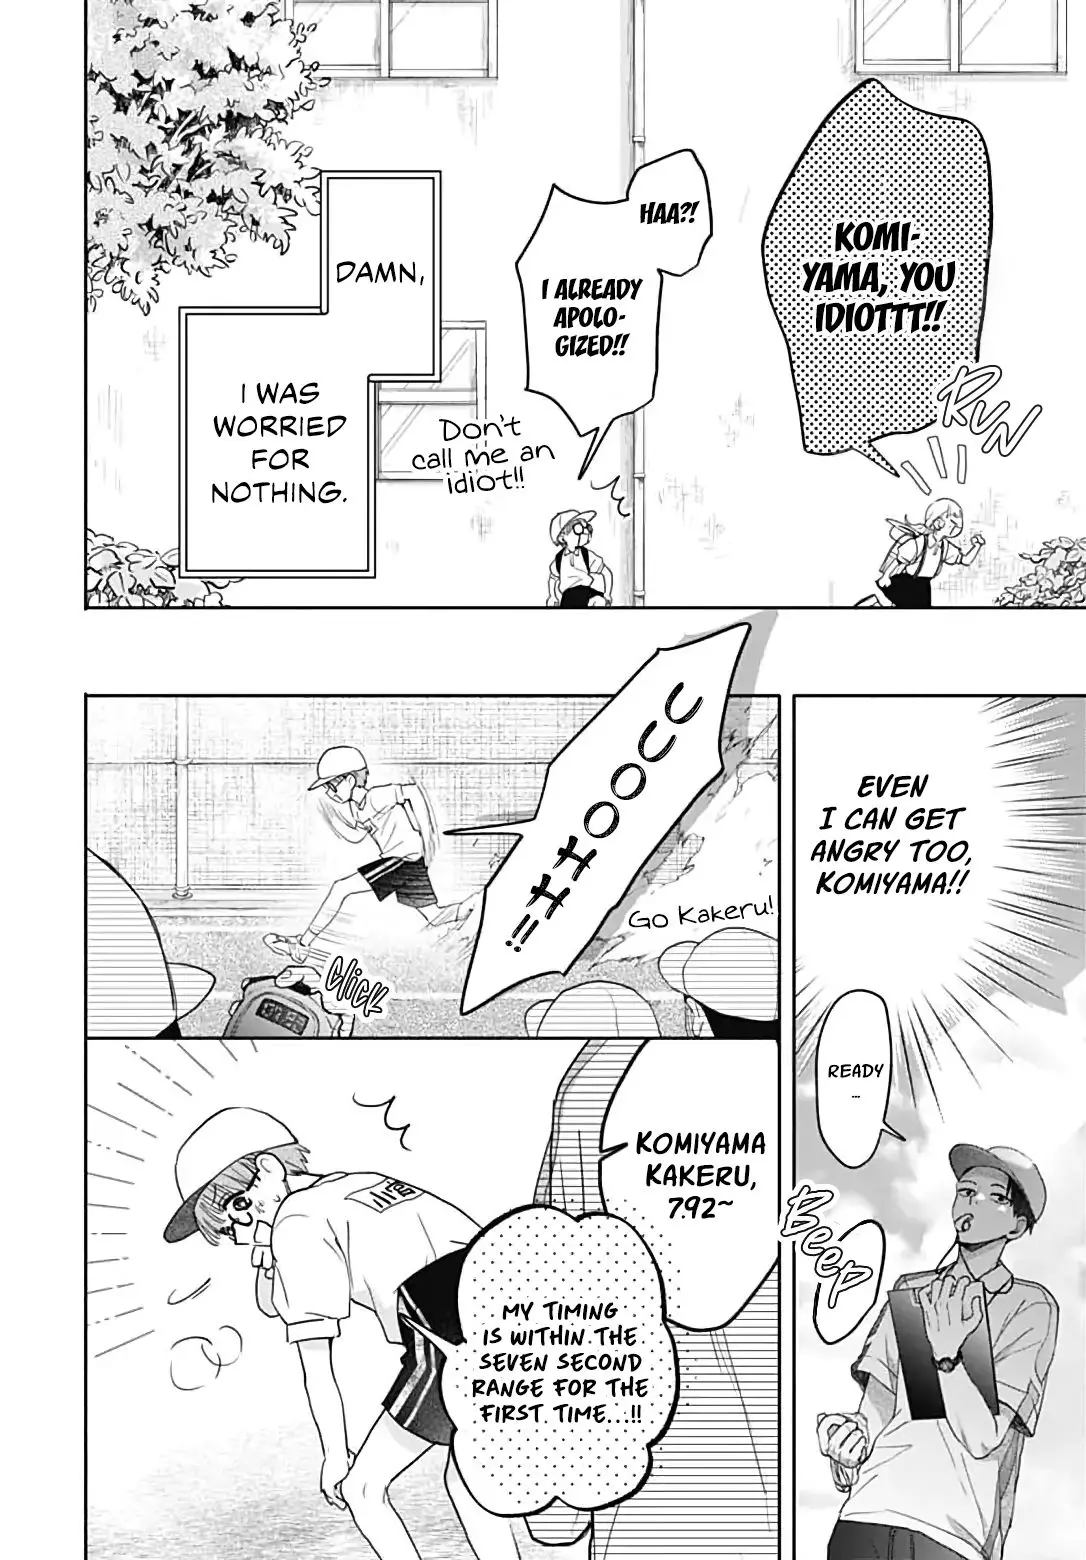 I Hate Komiyama - 1 page 19-55fabc7b